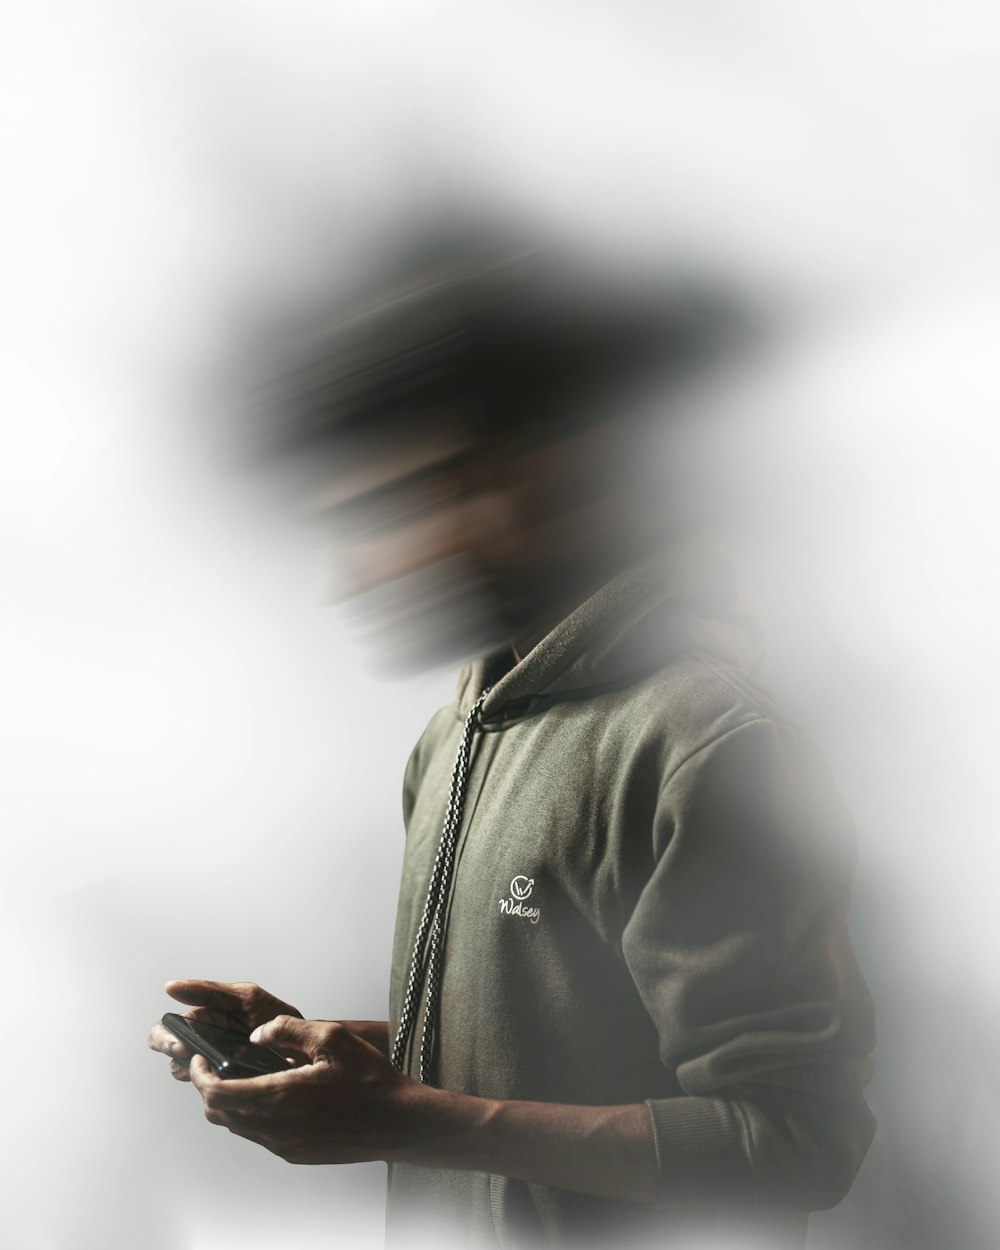 man in gray hoodie using smartphone